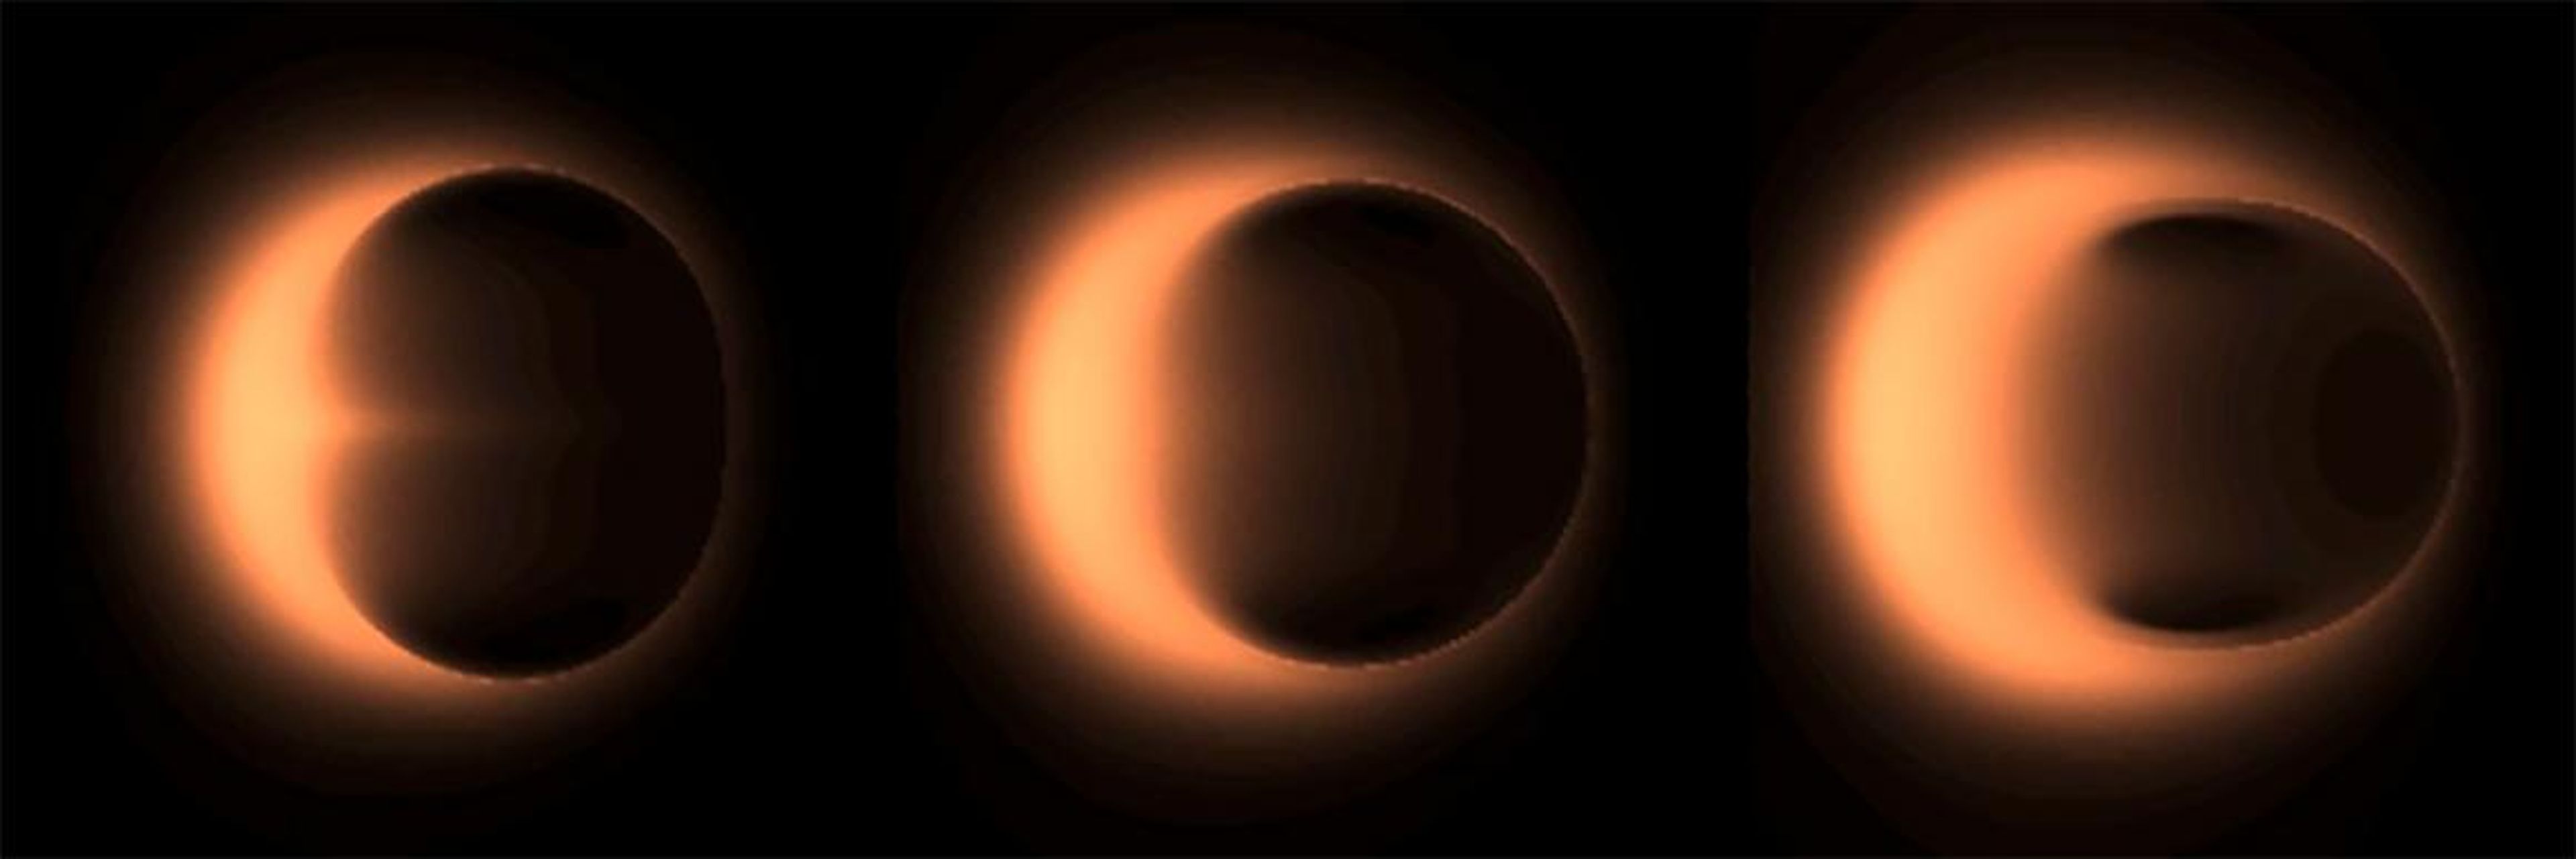 Diferentes simulaciones que muestran cómo se podría ver un agujero negro supermasivo.